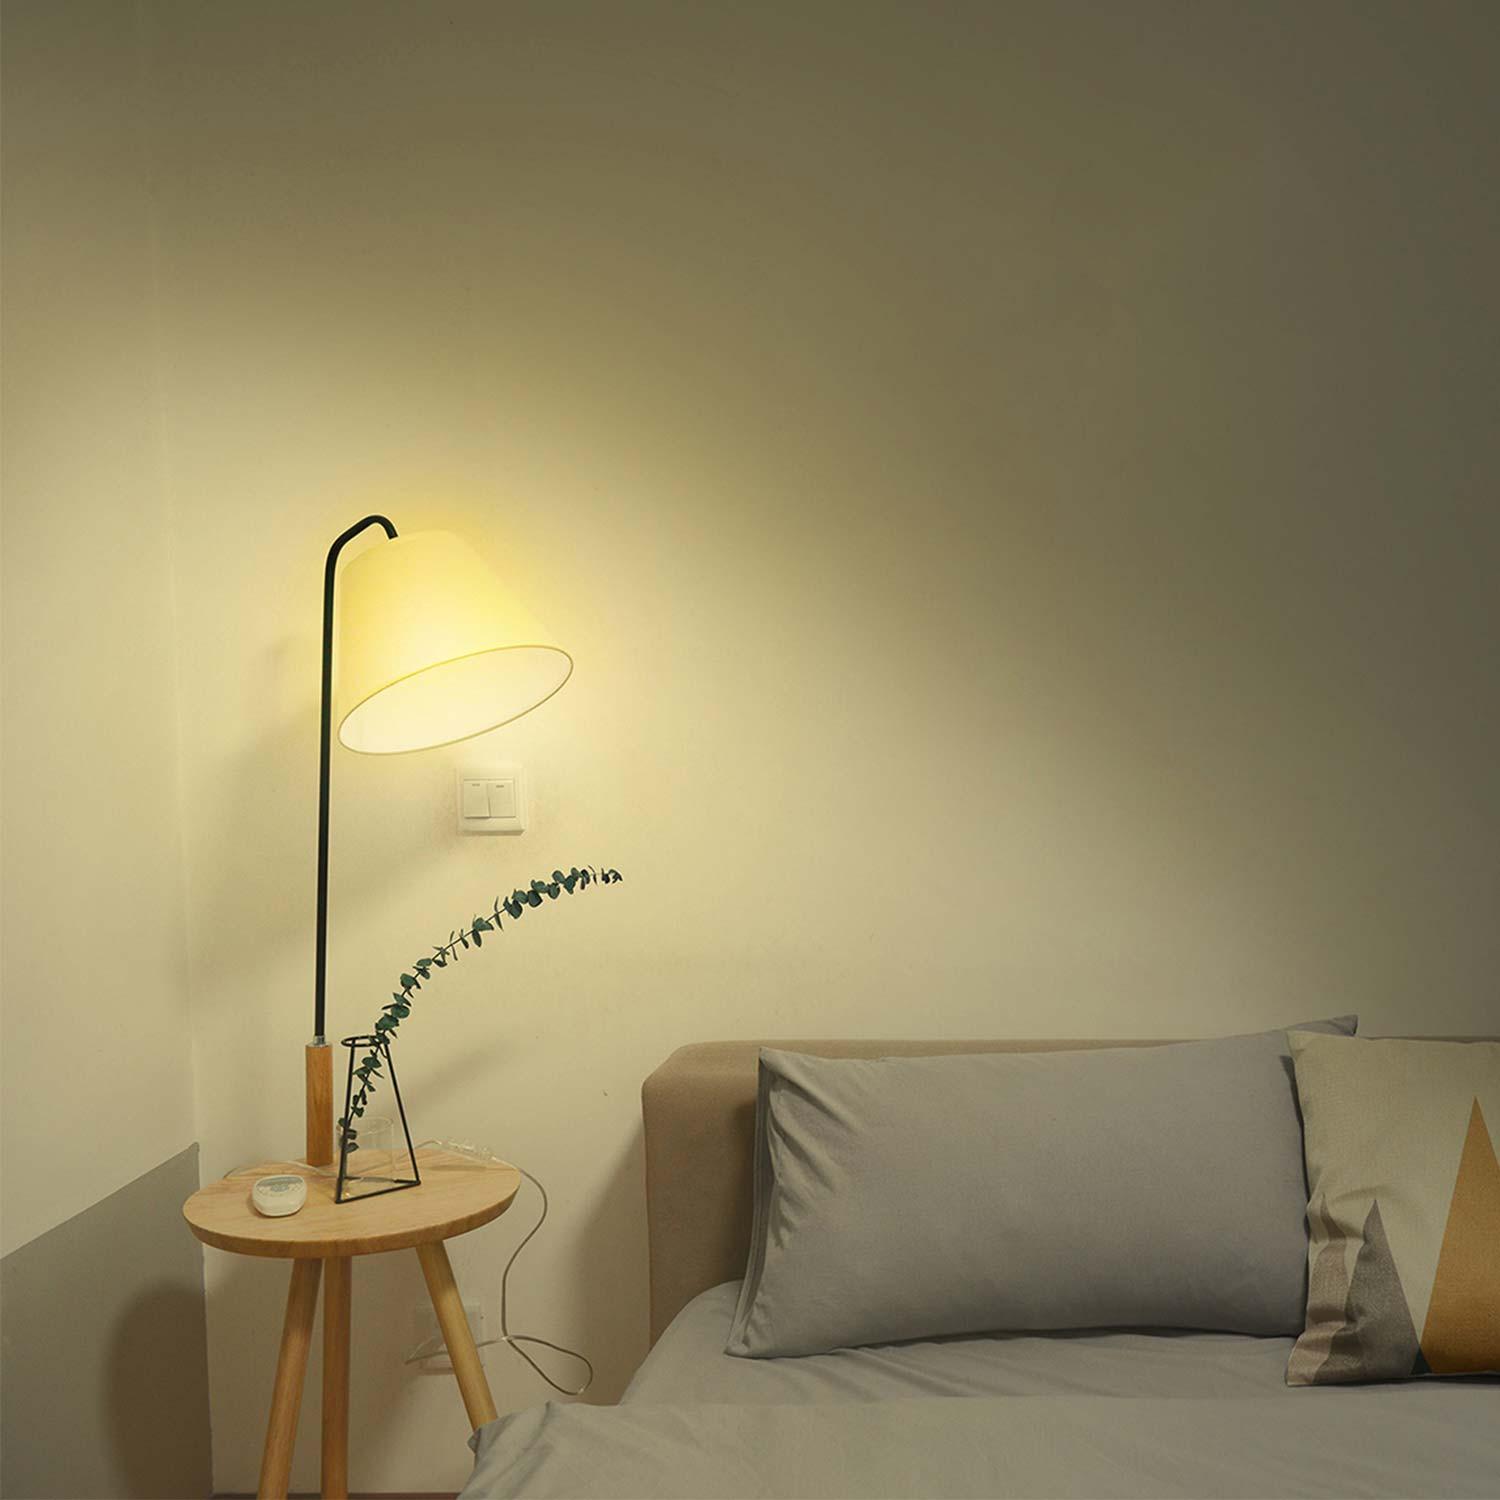 Hombli Smart Spot GU10 White-Lampe 3er-Set + gratis Smart Spot GU10 White 3er-Set - Weißlicht im Wohnzimmer